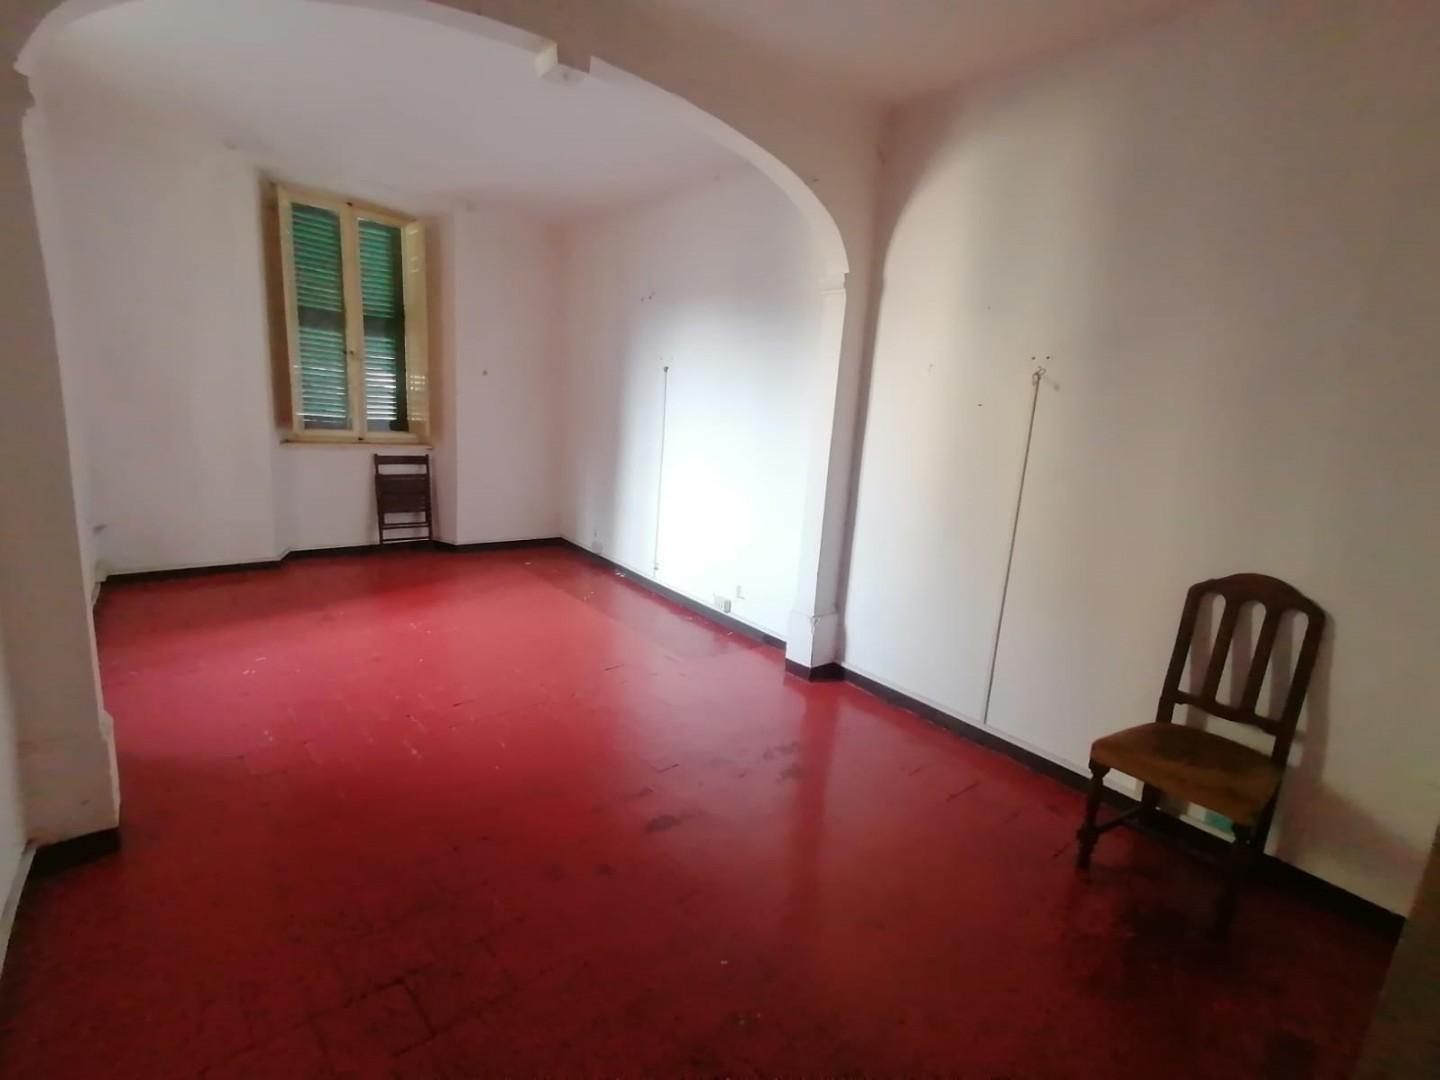 Appartamento in vendita a Pieve Fosciana, 5 locali, prezzo € 70.000 | PortaleAgenzieImmobiliari.it